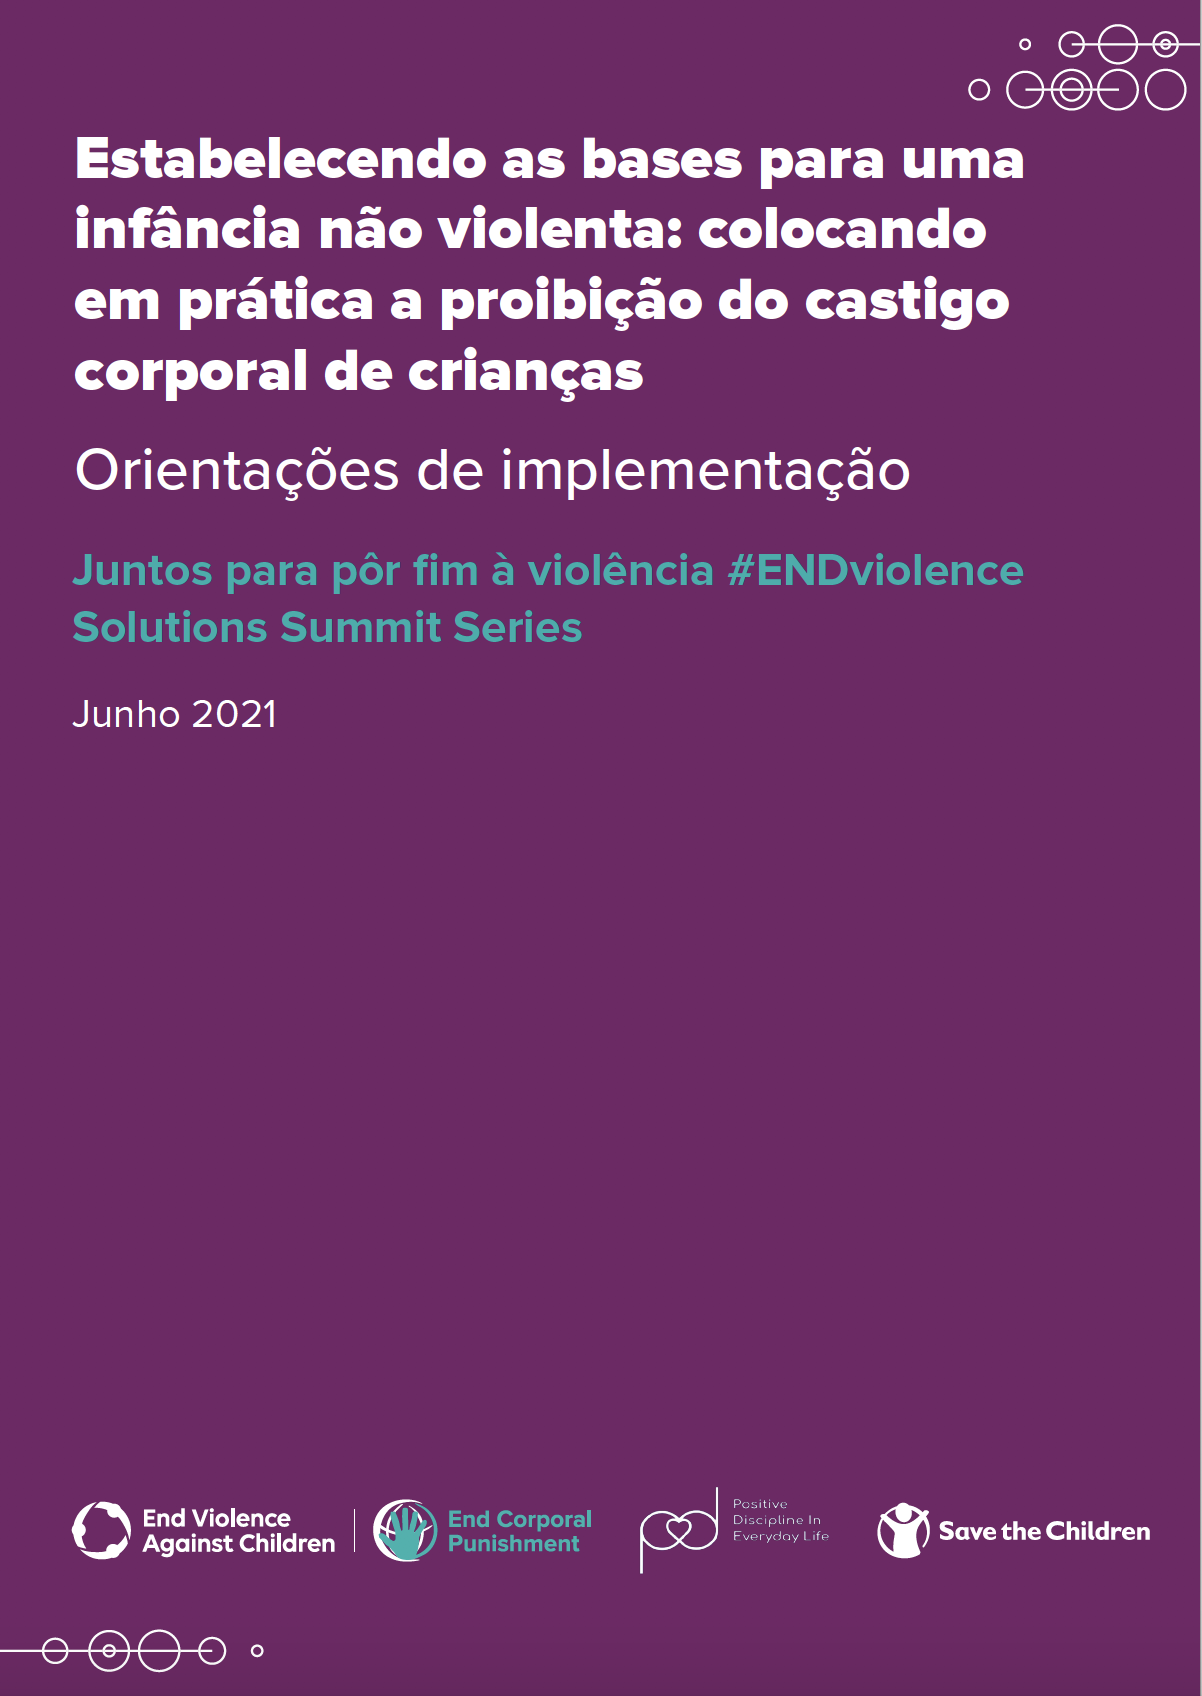 Portuguese cover